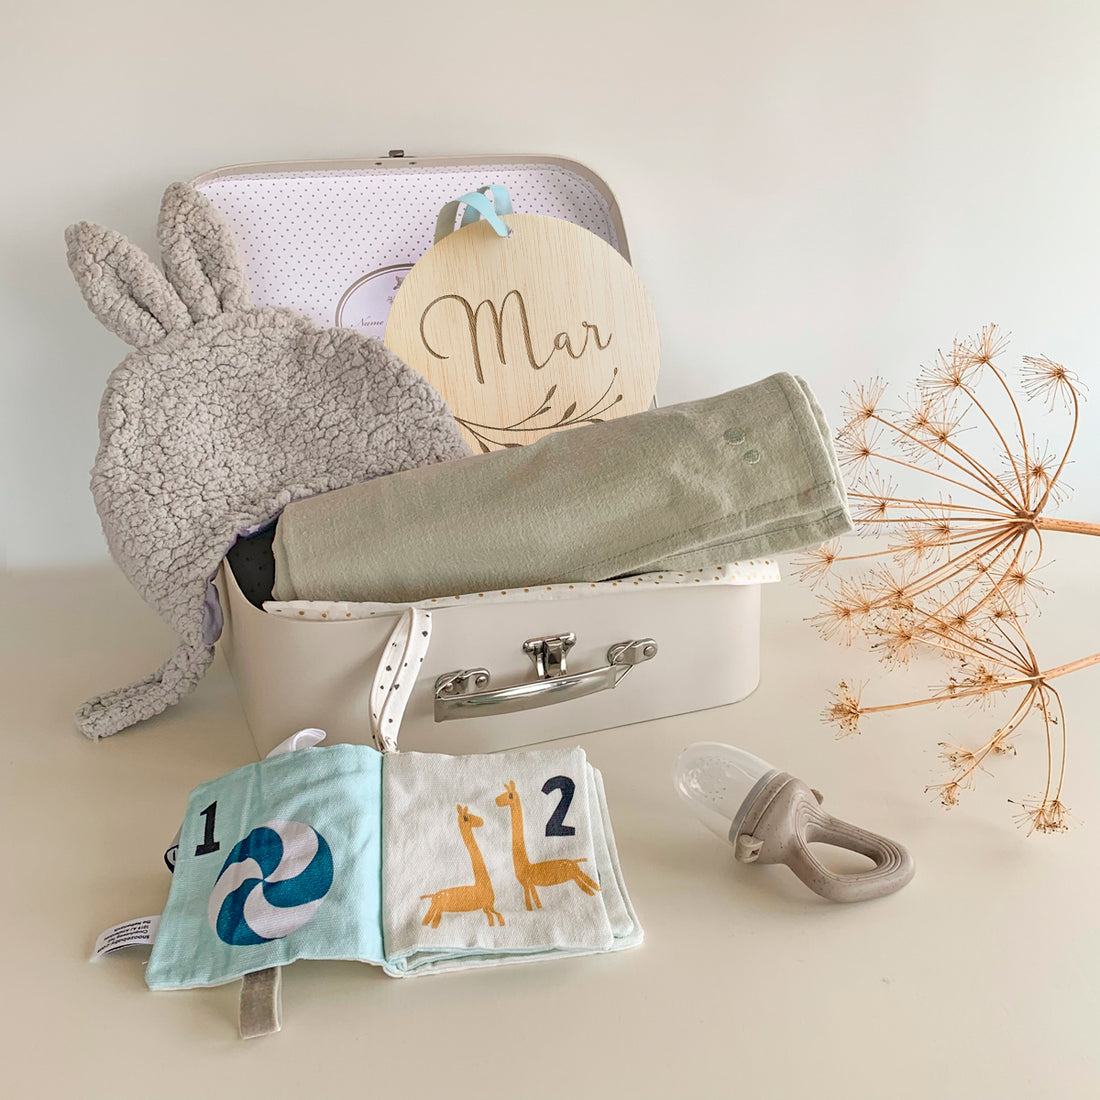 Cajita regalo bebe que incluye gorrito, muselina, libro de actividades, chupete alimentador y placa con nombre del bebé